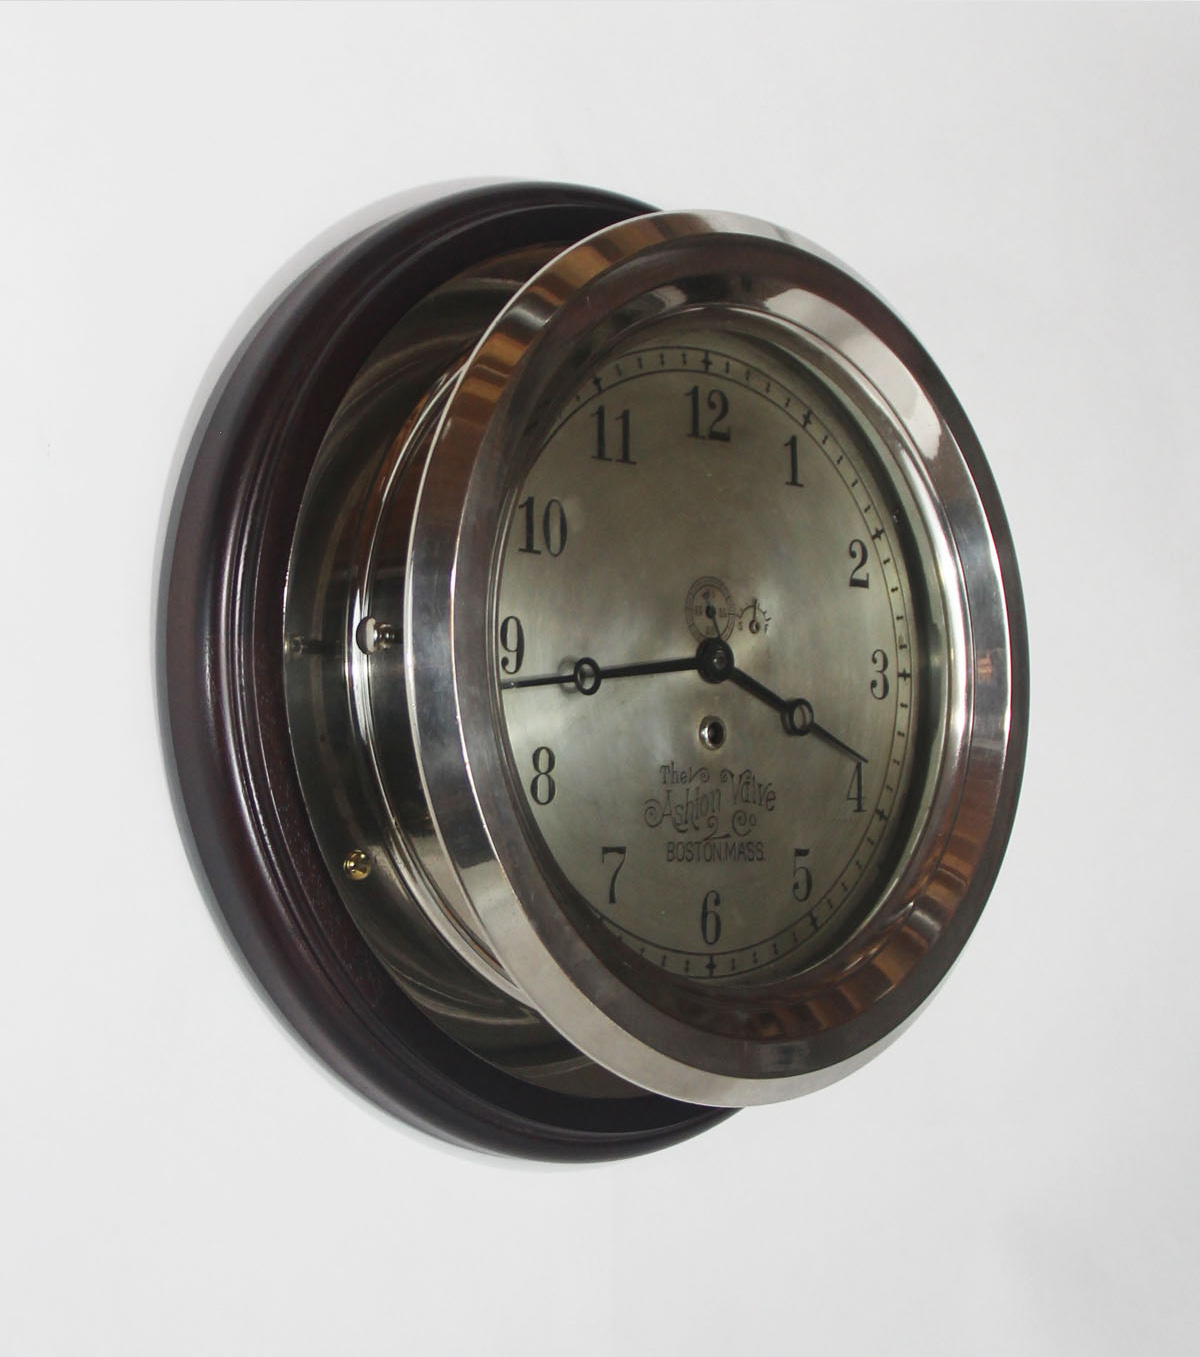 Chelsea 10 inch Marine Clock for The Ashton Valve. Co.